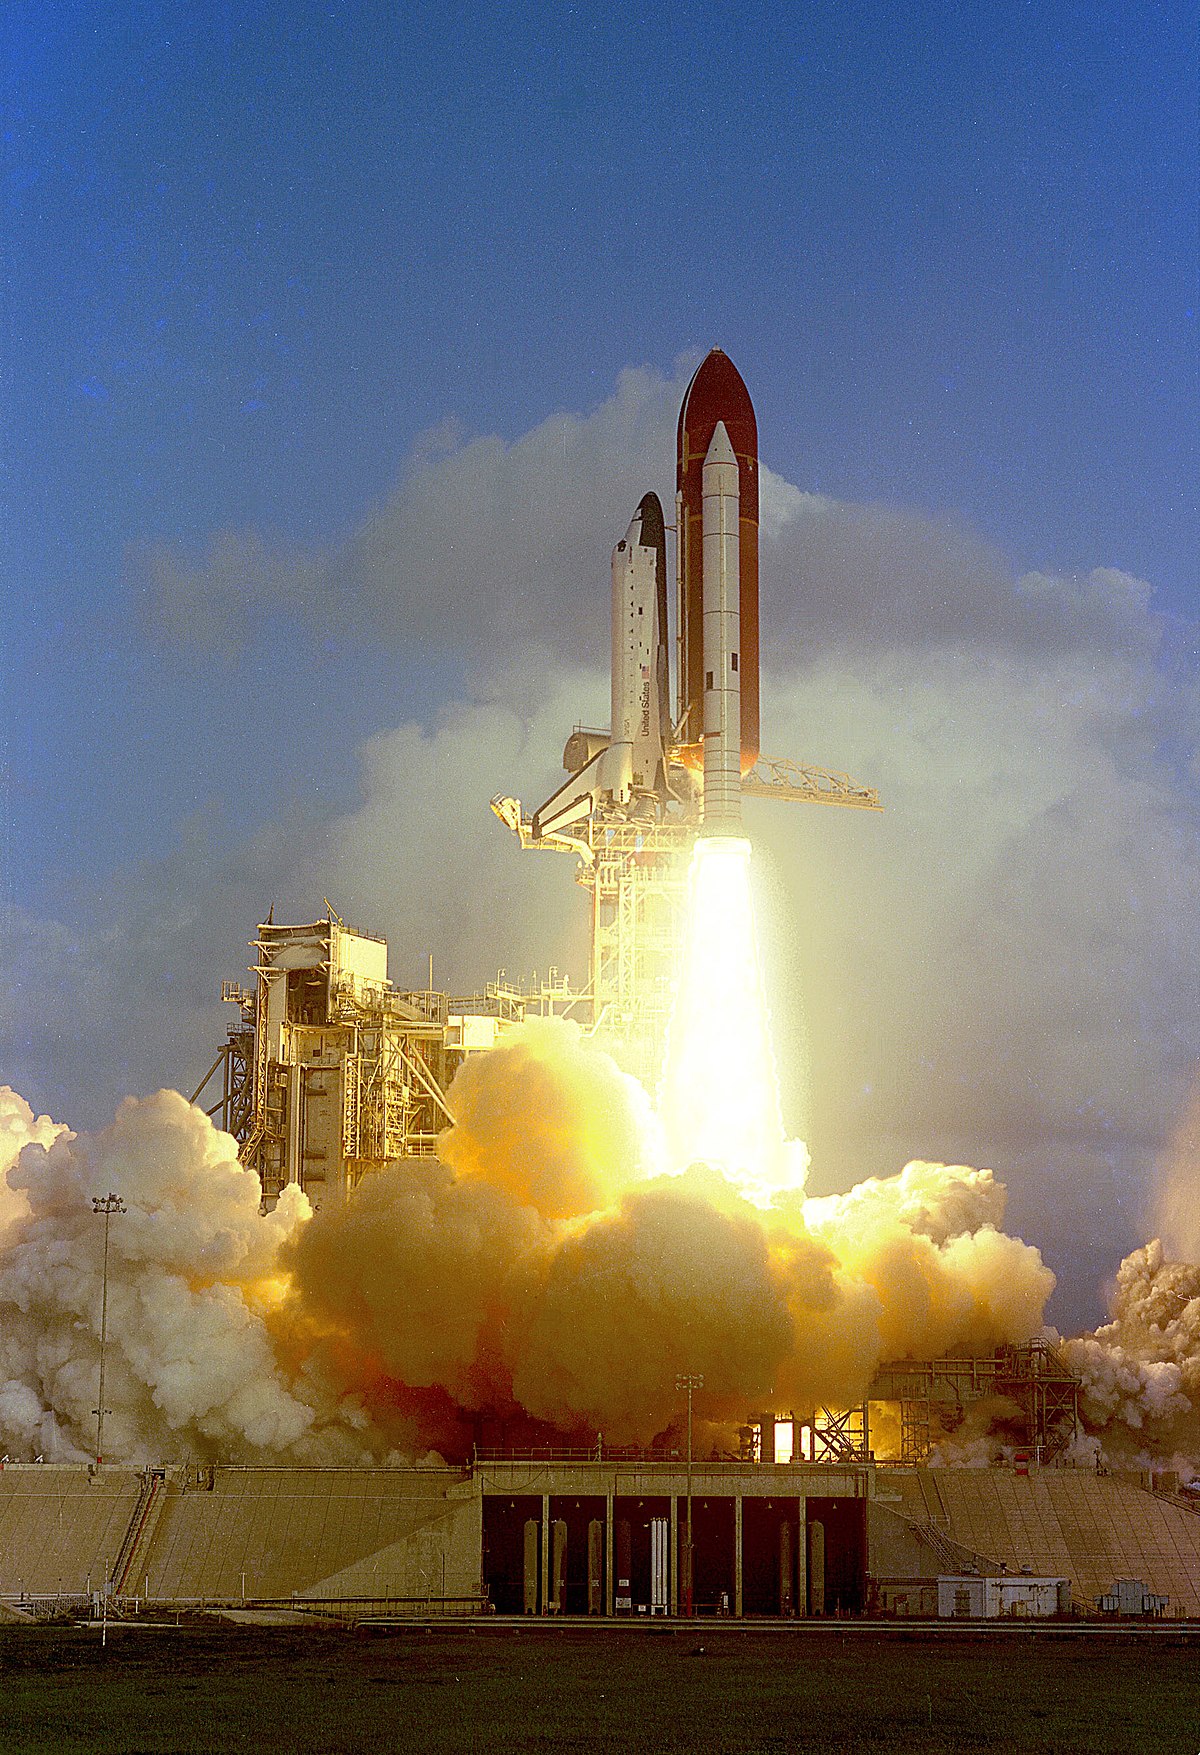 Challenger - một phần của lịch sử hàng không vũ trụ đầy kiêu hãnh và thách thức. Hãy cùng xem những hình ảnh đáng nhớ về chuyến bay cuối cùng của tàu vũ trụ này và những người hùng đã đóng góp cho nó.